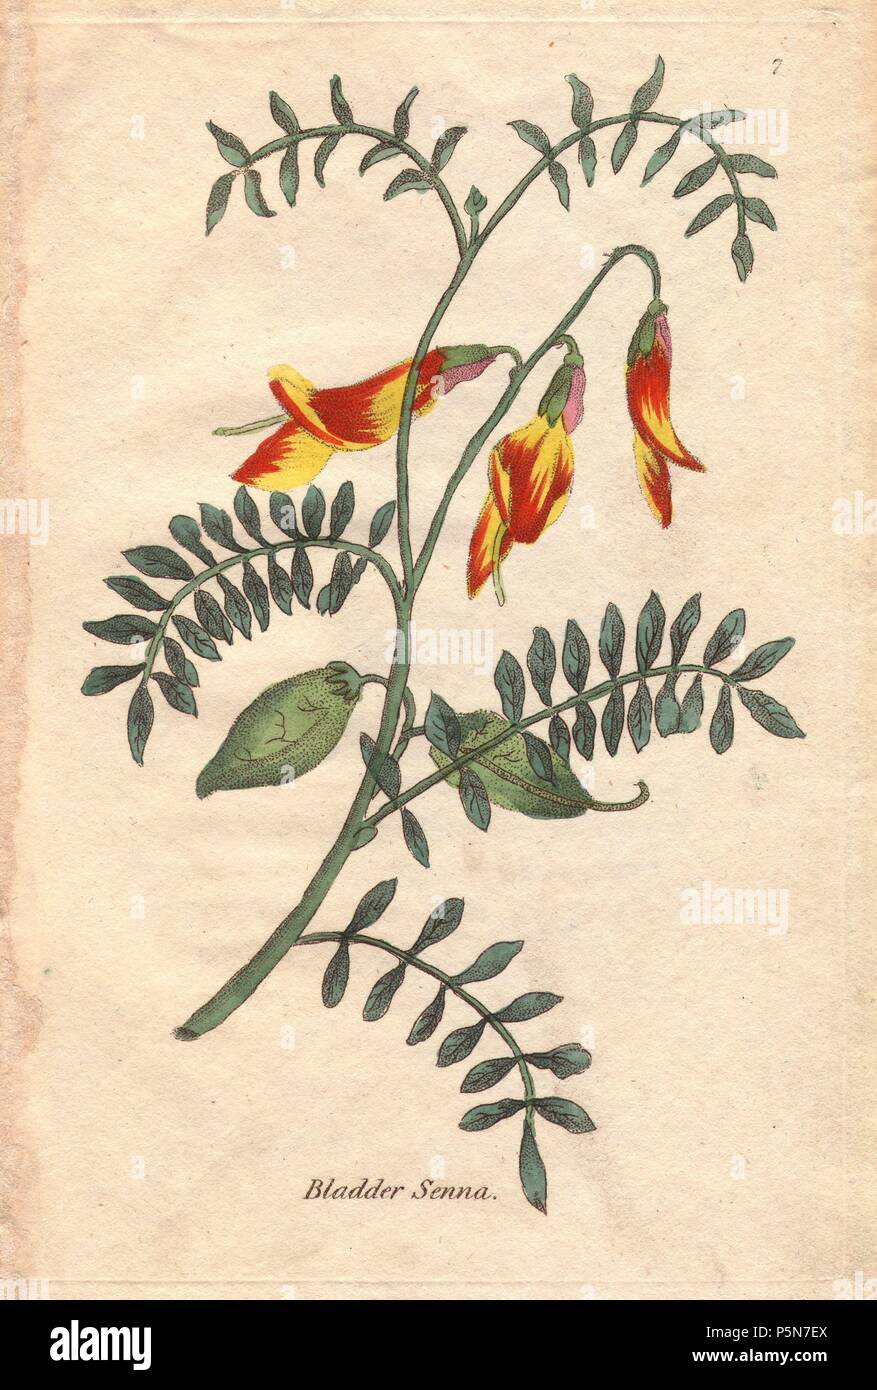 Senna, vessie Colutea frutescens, de couleurs orange et jaune, vert vif fleurs petites feuilles pennées, vert et deux grandes vessies (gousses) dans le centre. L'ensemble illustré de fleurs se propager à travers la page de façon dynamique. . Illustration par Henrietta Moriarty de plaques "cinquante plantes de serre' (1807), une ré-édition de son propre 'Viridarium' (1806), avec des gravures sur cuivre coloriée. Moriarty était une veuve du colonel qui s'est tourné vers l'écriture de romans et livres botaniques illustrant à l'appui de ses quatre enfants. Banque D'Images